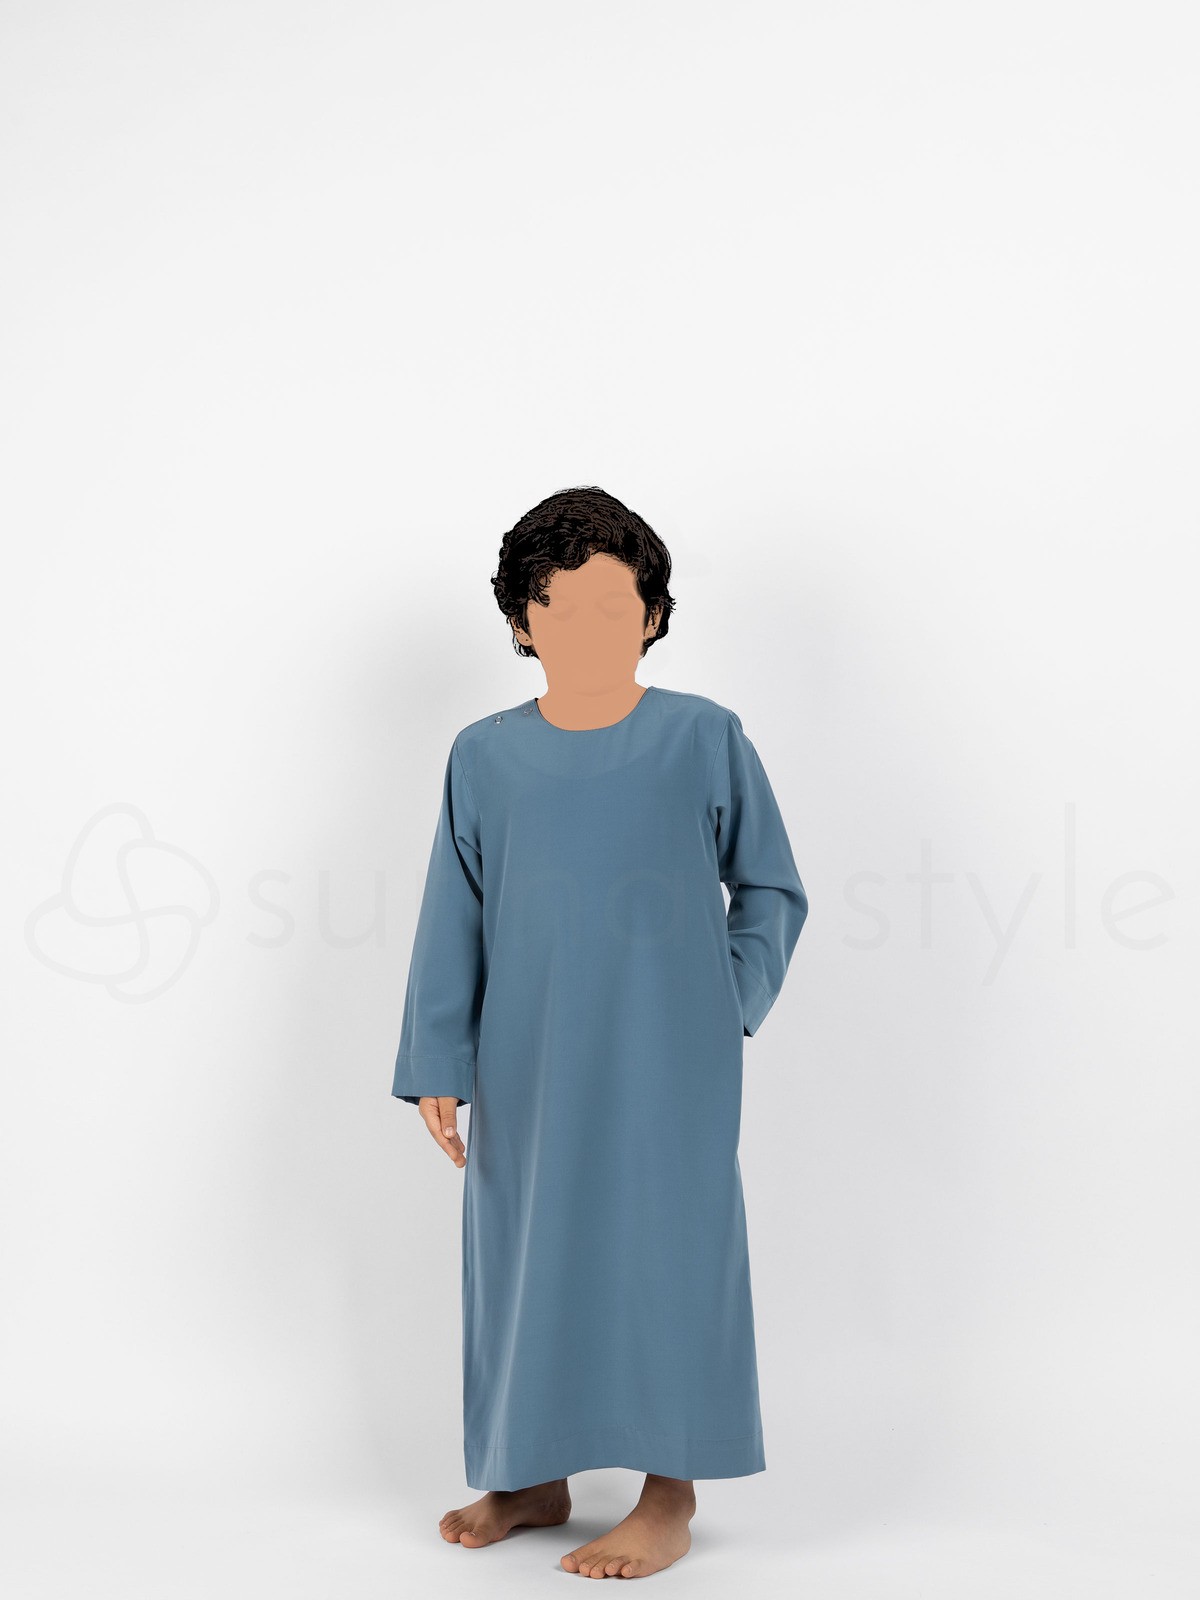 Sunnah Style - Boys Shoulder Snap Thobe - Child (Sky Blue)